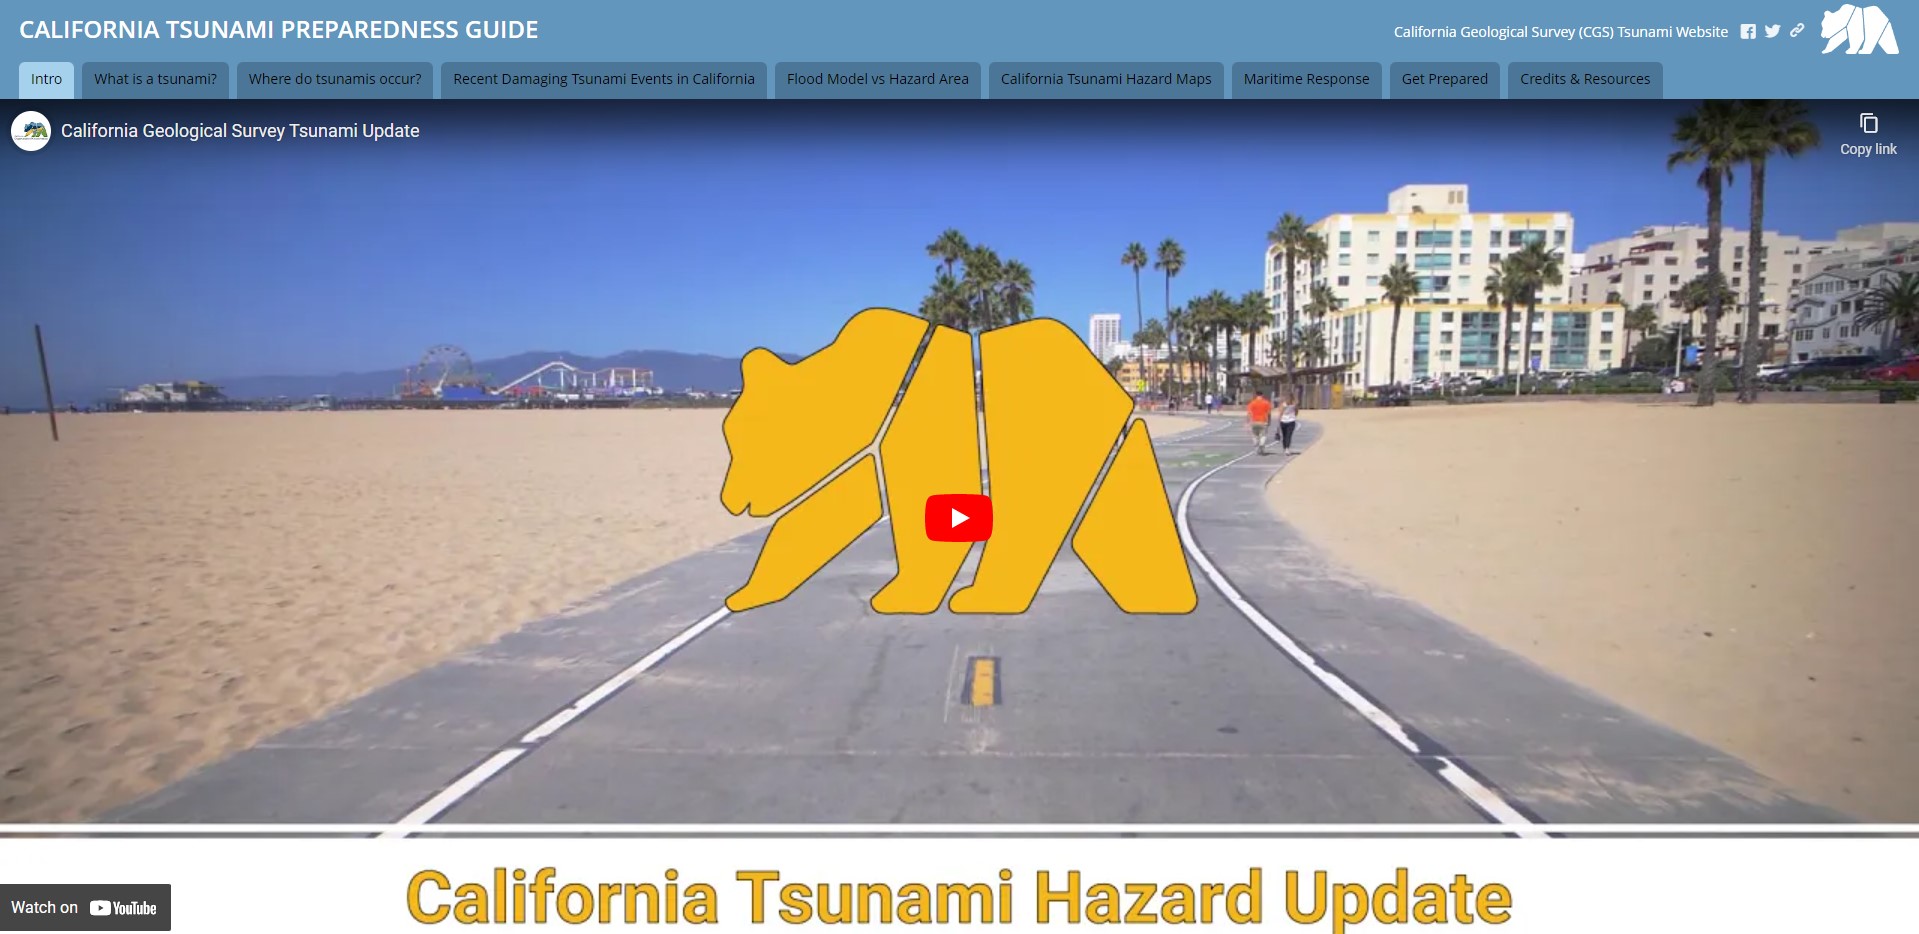 California Tsunami Preparedness Guide